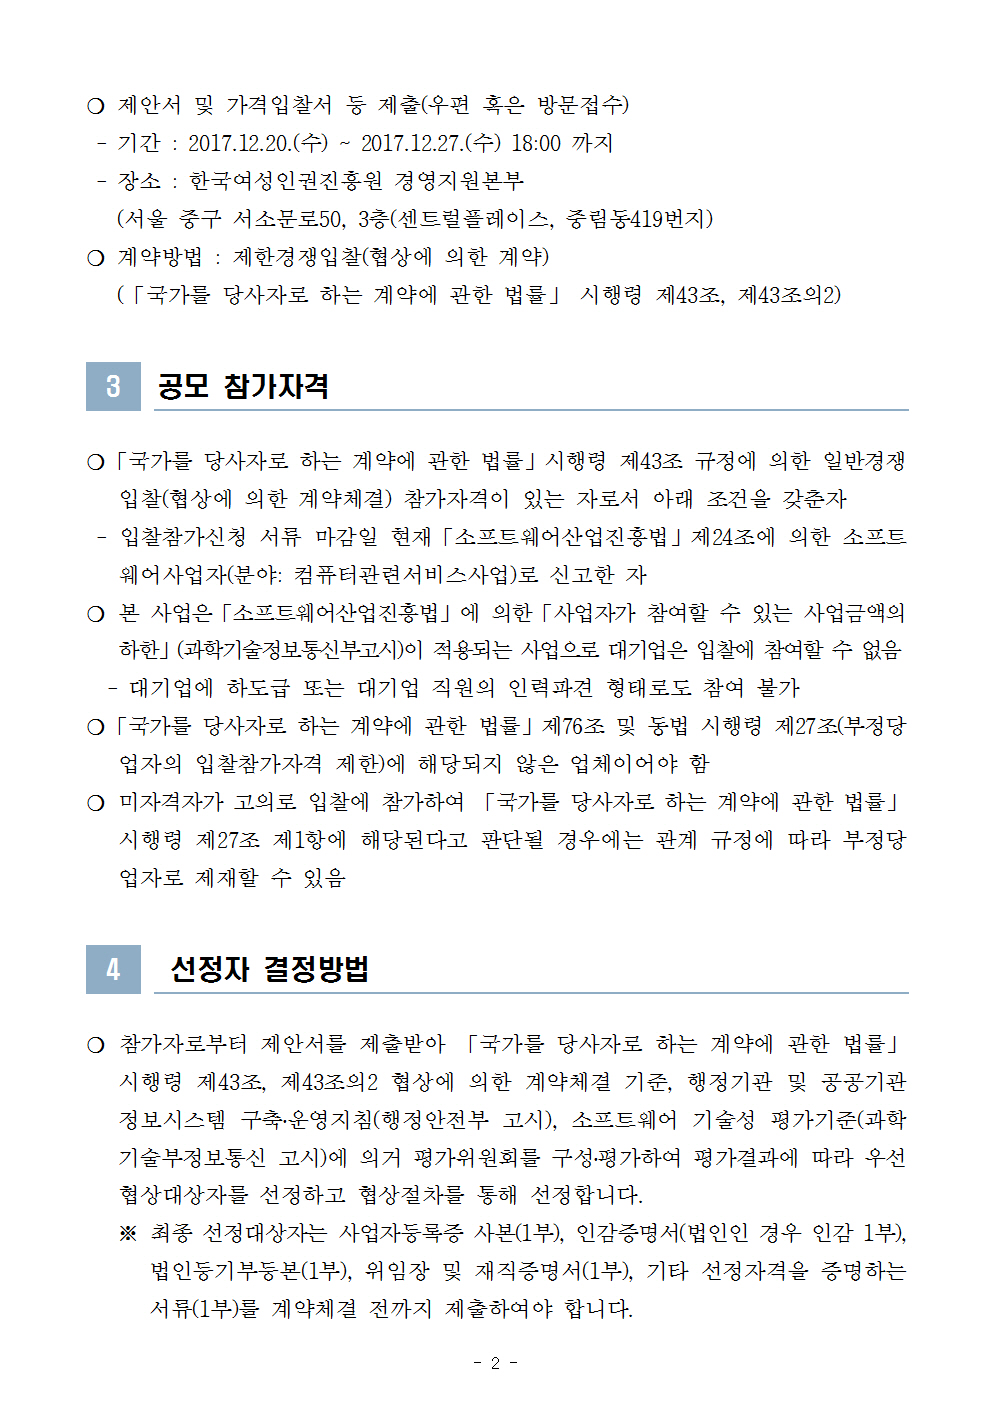 한국여성인권진흥원 2018년도 그룹웨어시스템 유지보수 공모 시행 공고문 2page.jpg